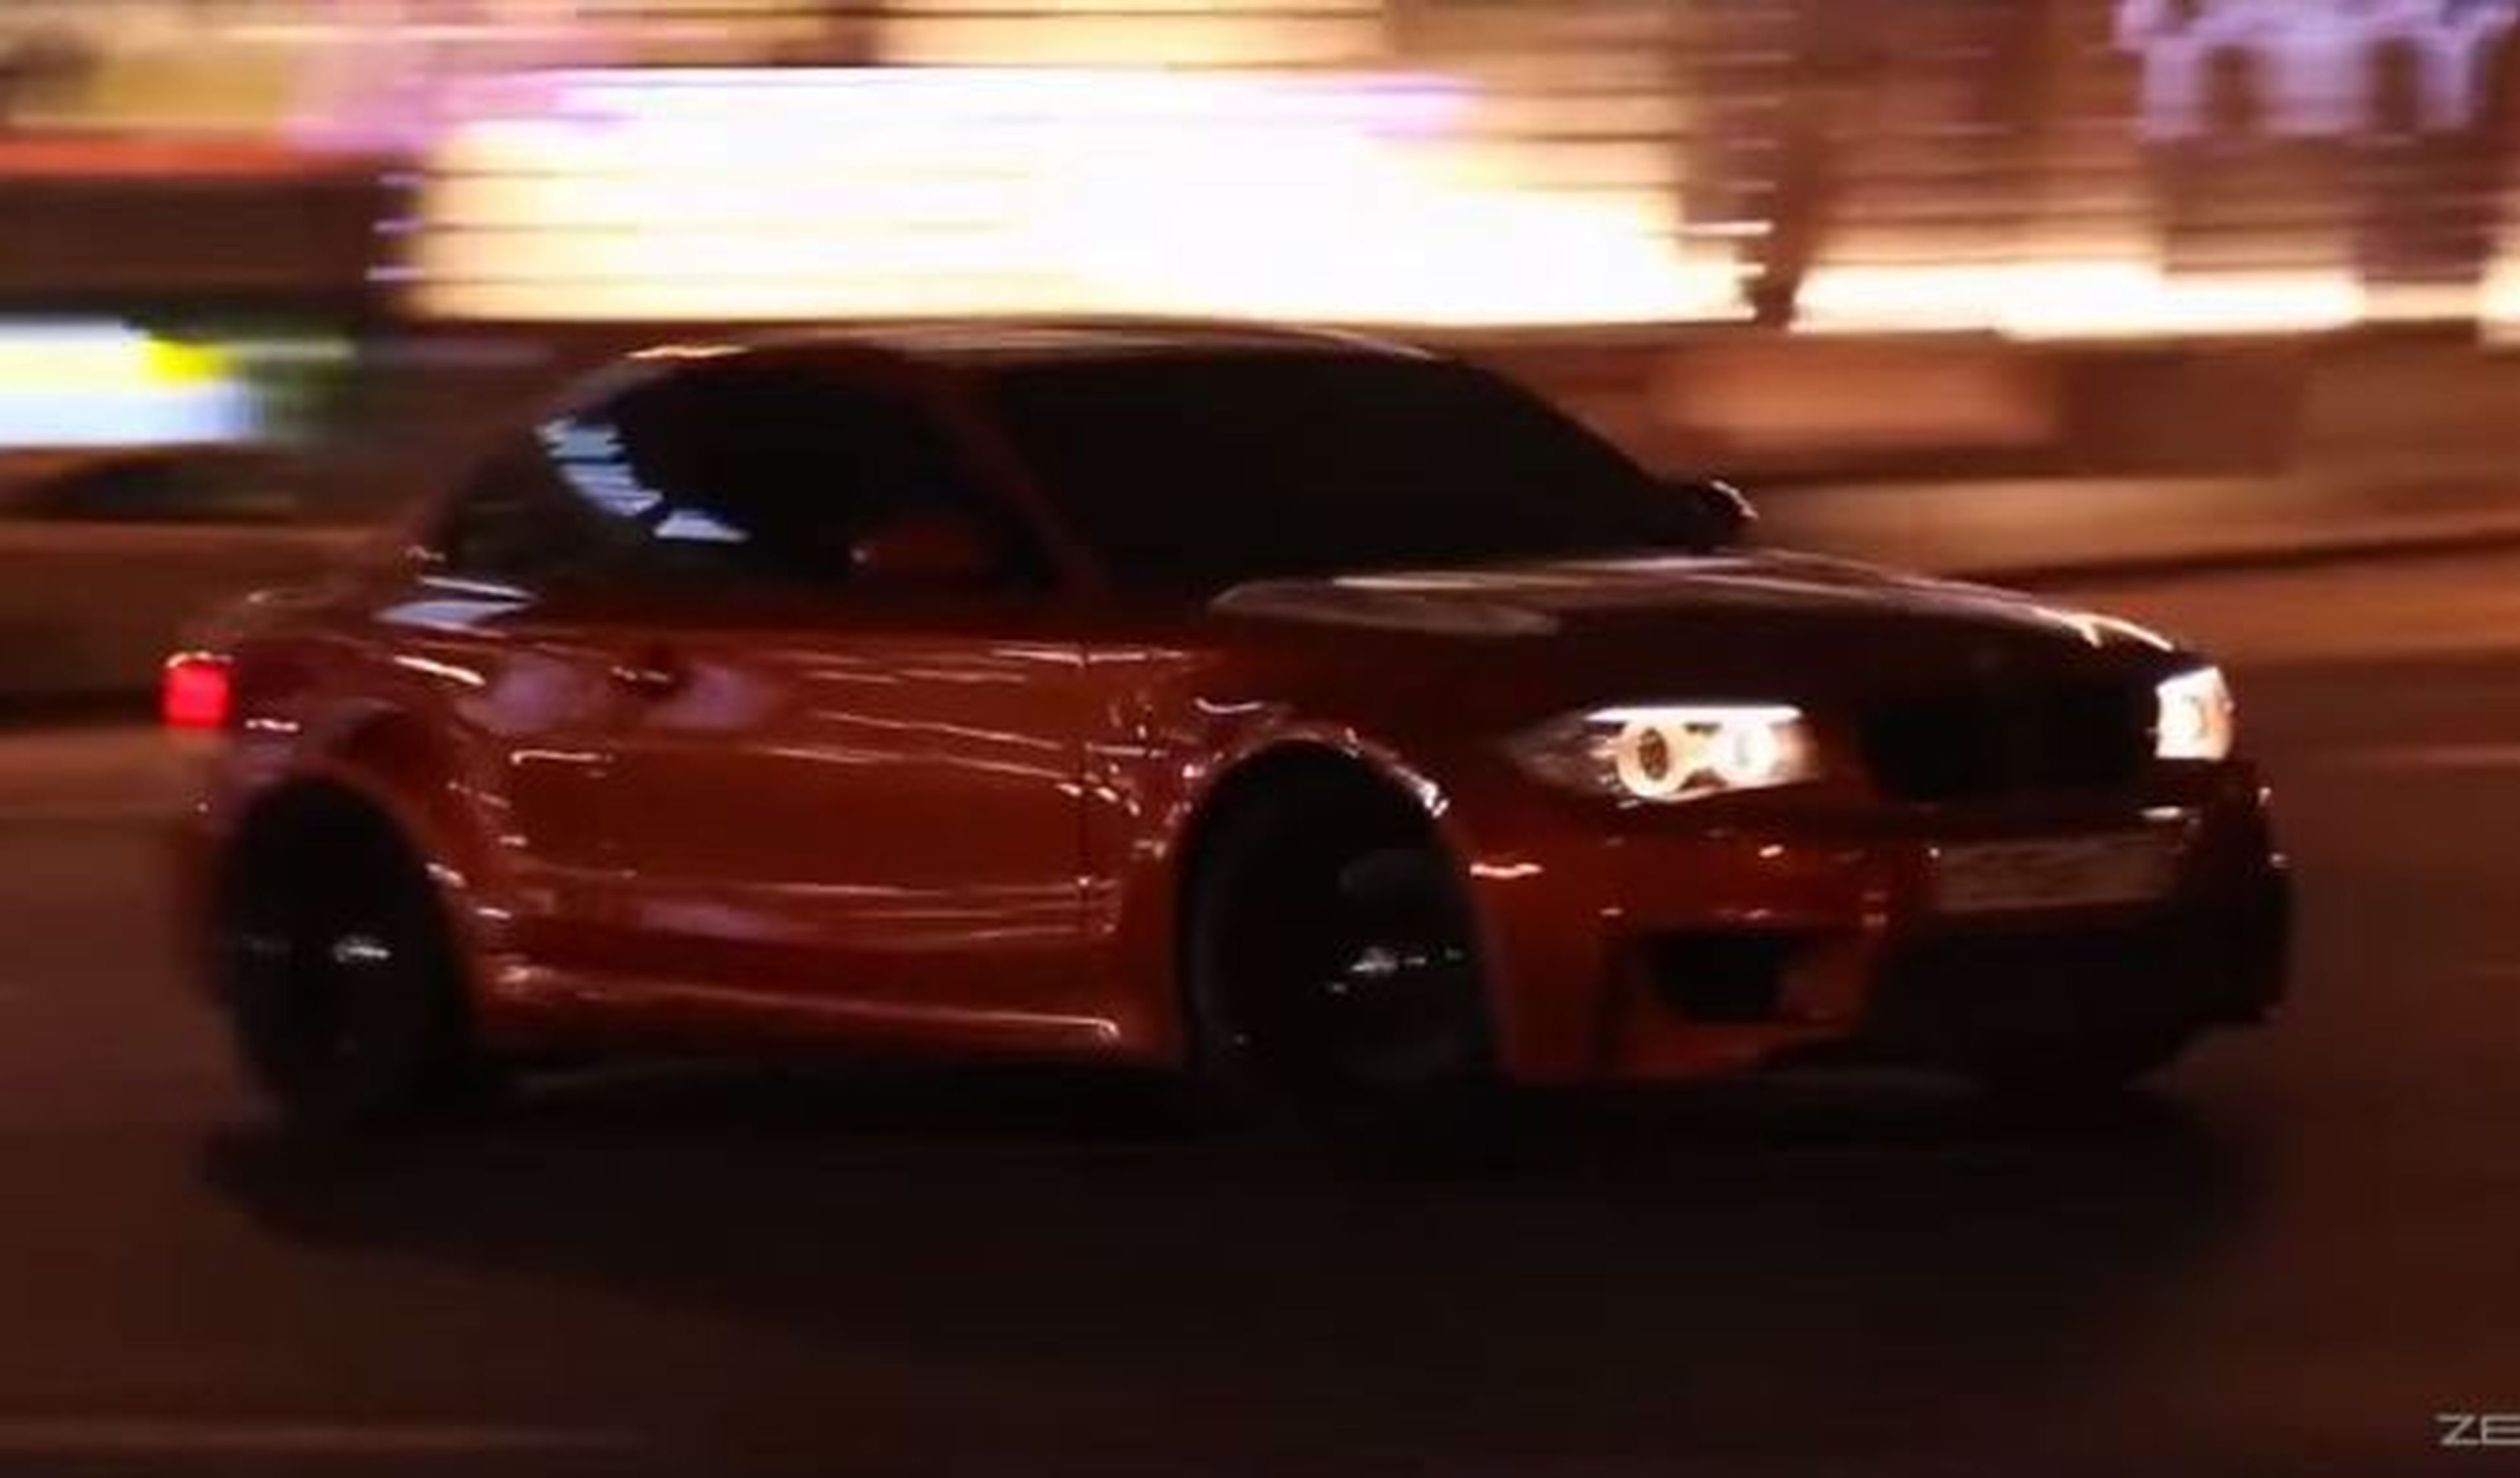 Drifting clandestino del BMW 1M Coupé en Rusia